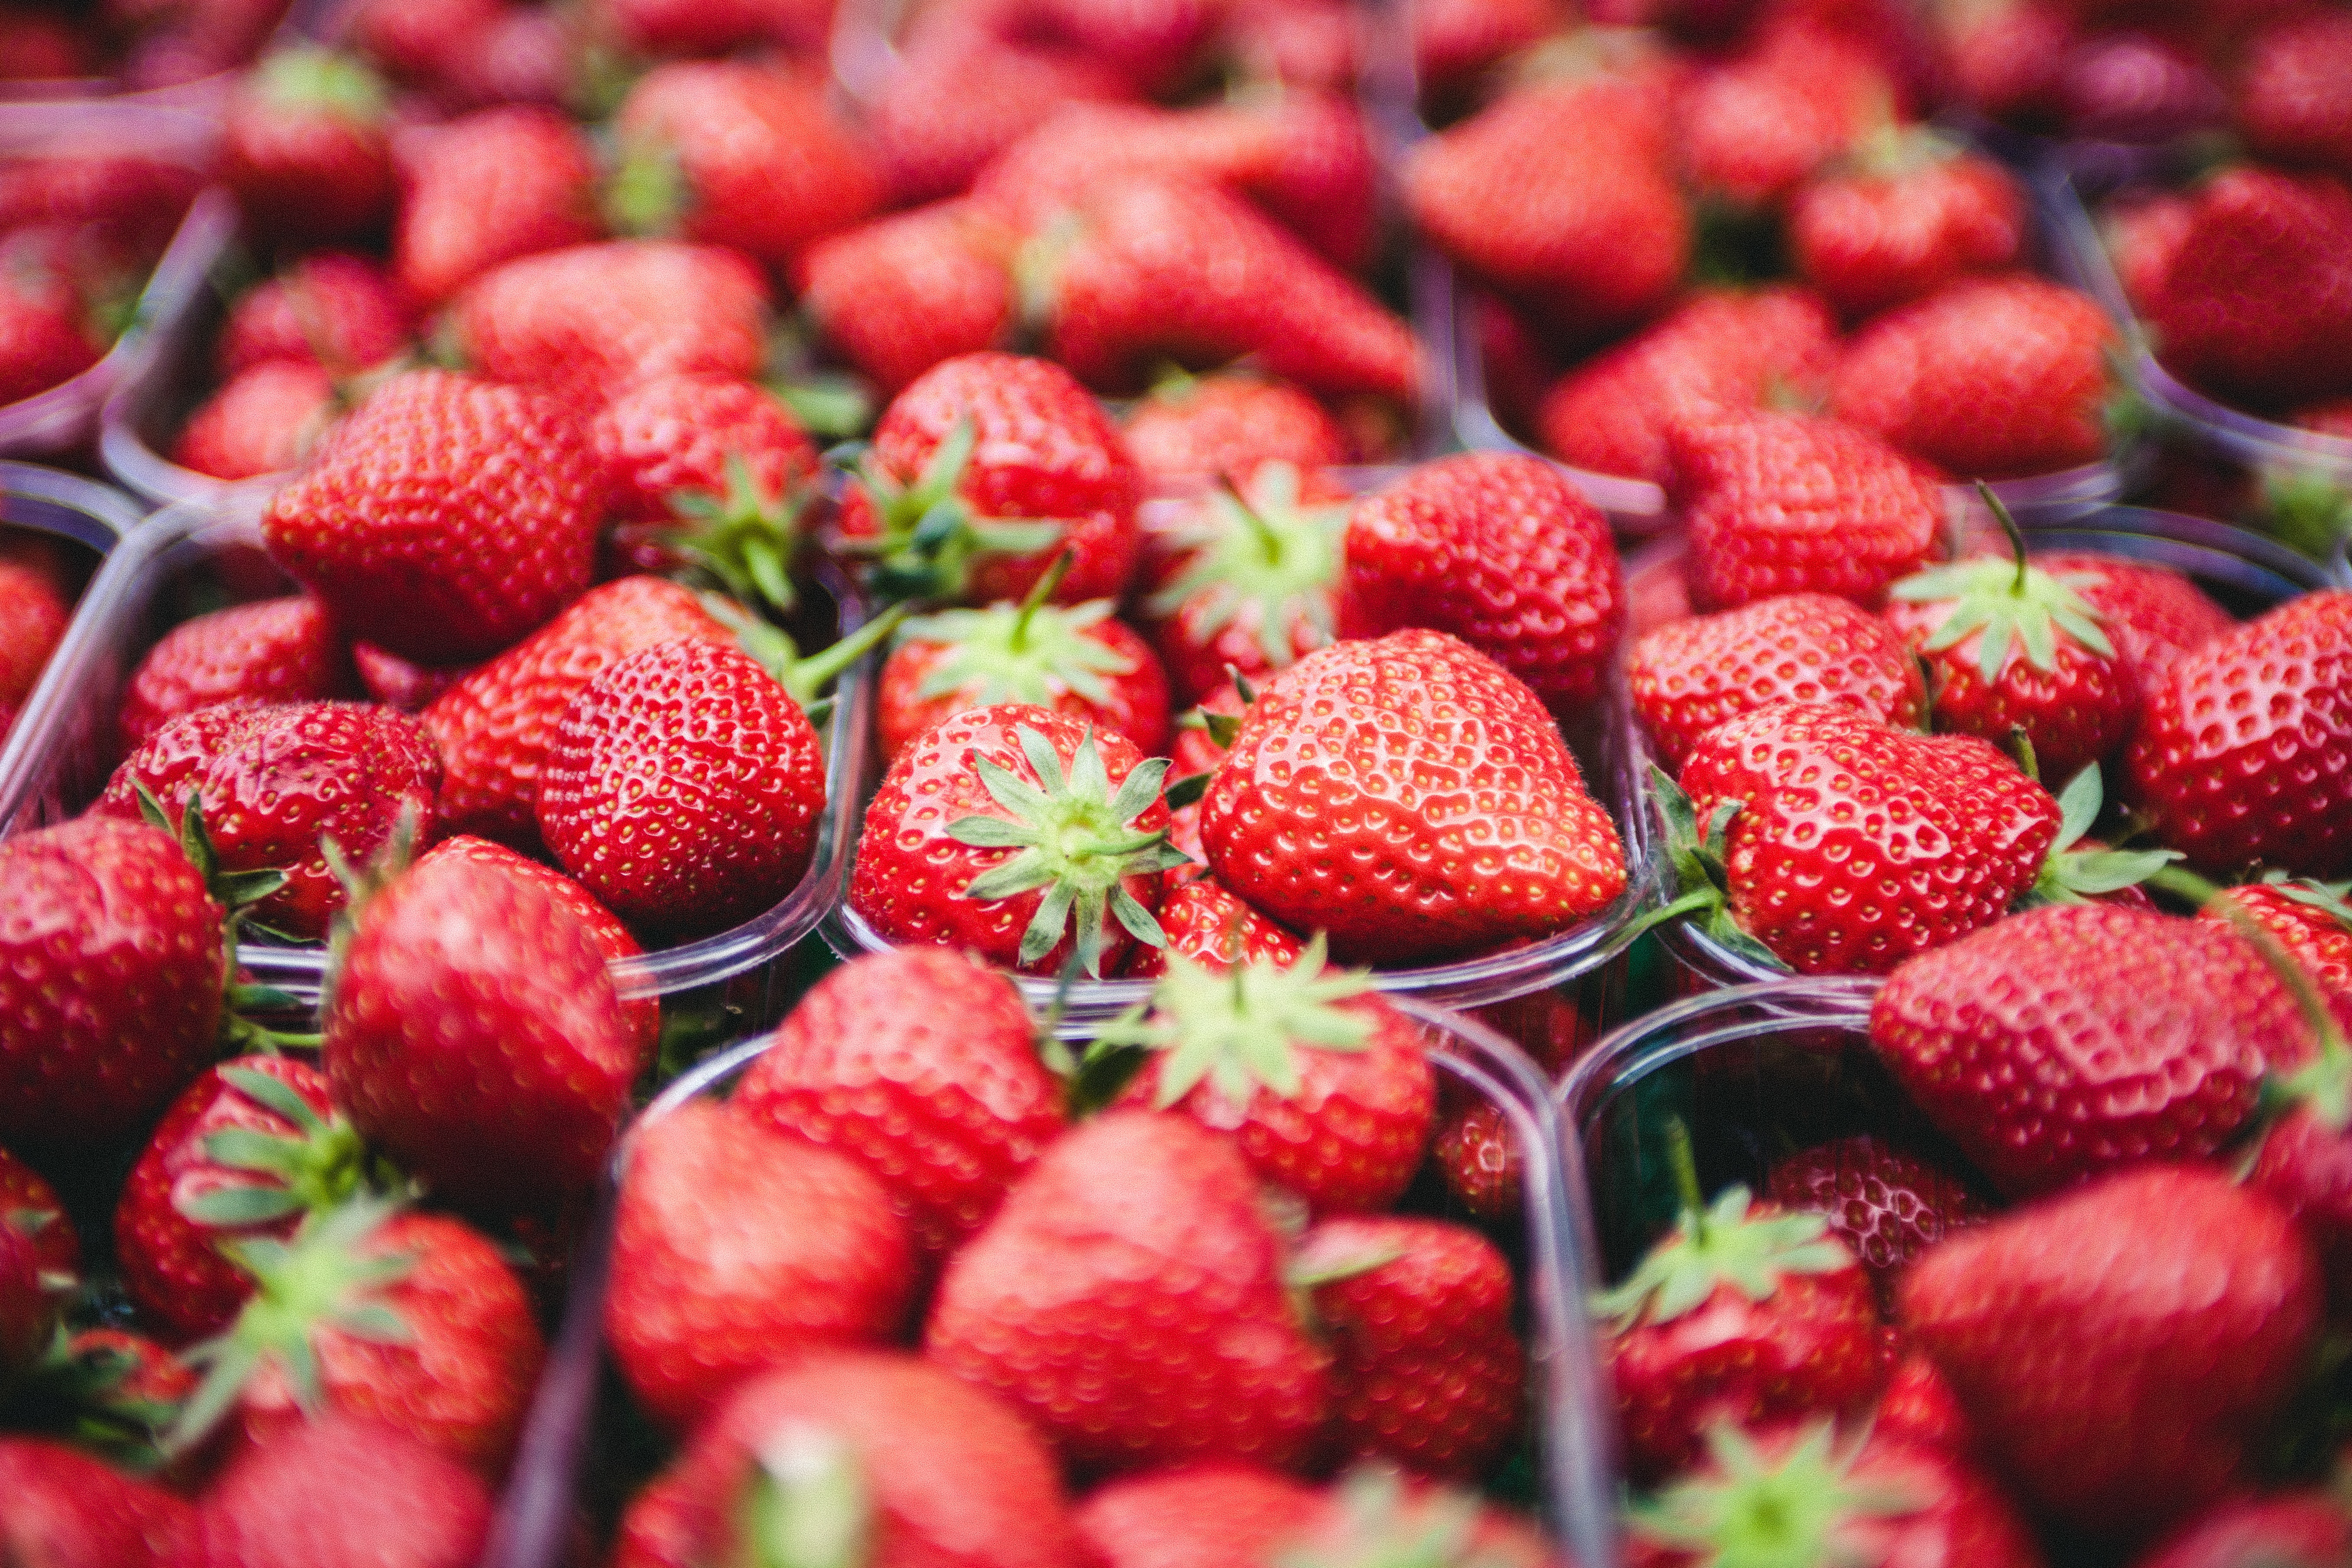 Las fresas o frutillas contienen cualidades medicinales secretas (Pexels)